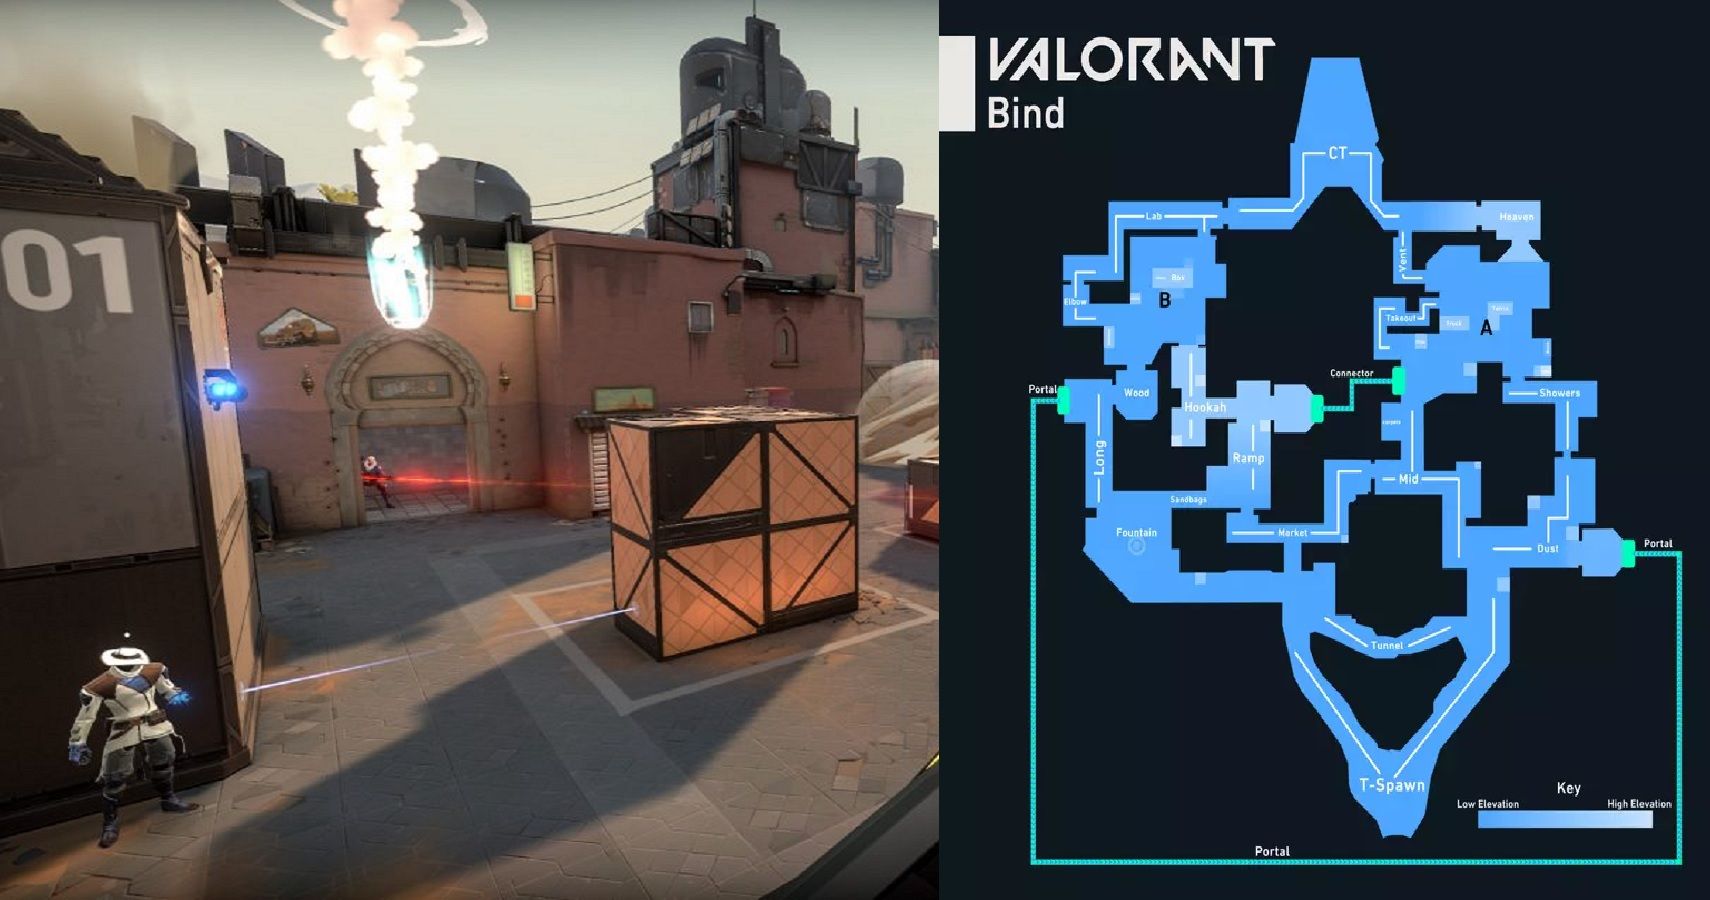 valorant map design is bad